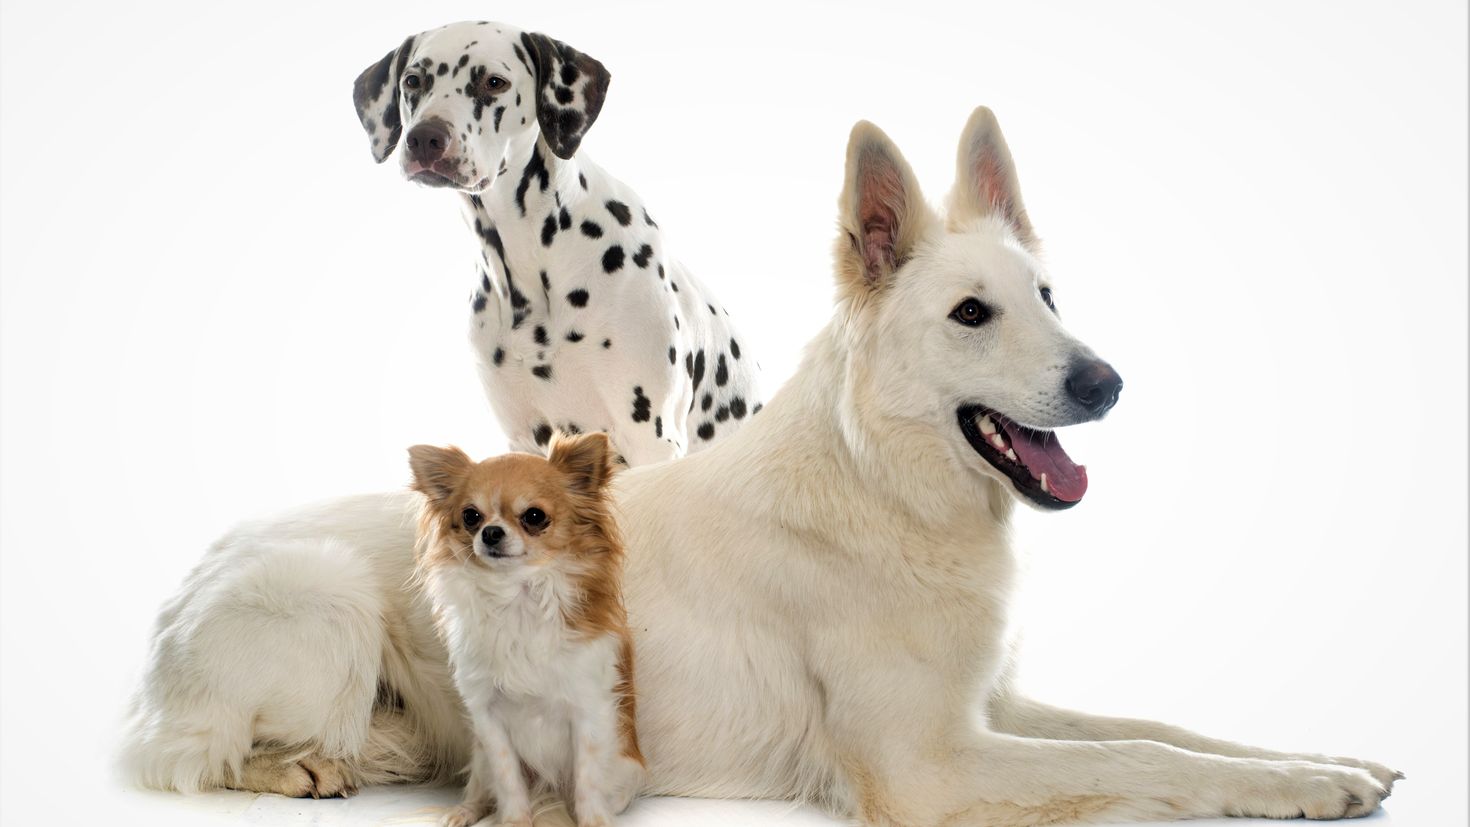 3 animals dogs. Далматин и чихуахуа. Далматинец и овчарка. Овчарок и далматинов. Чихуахуа далматинец.